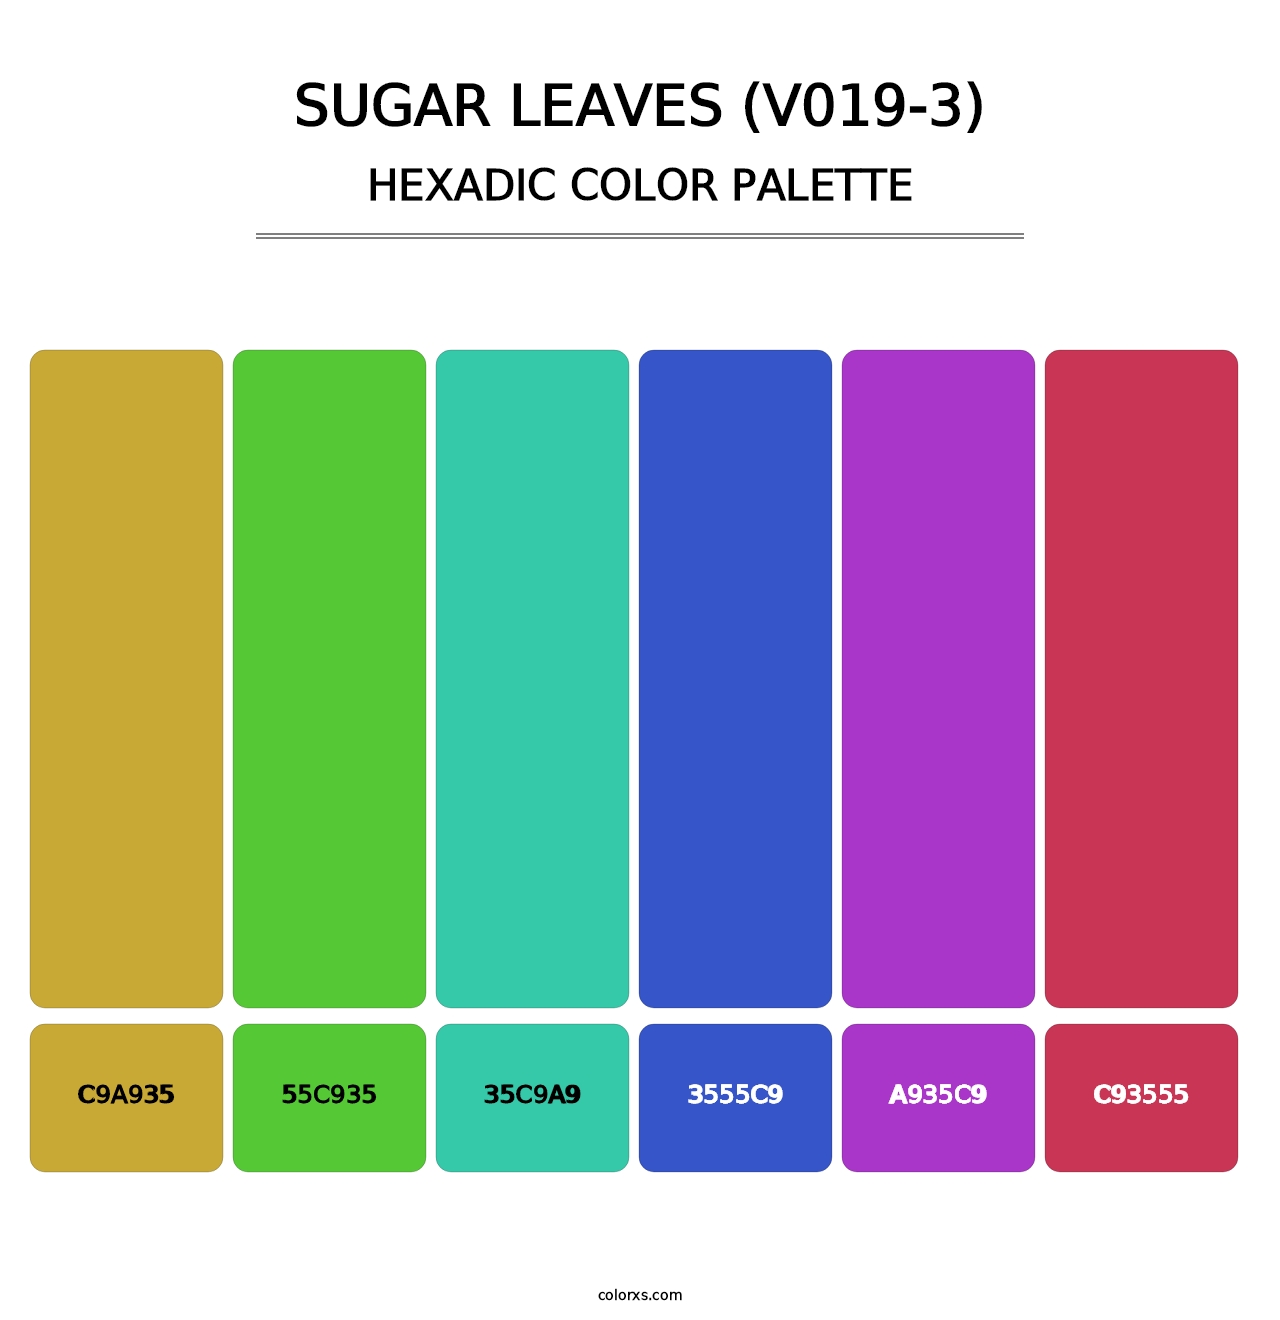 Sugar Leaves (V019-3) - Hexadic Color Palette